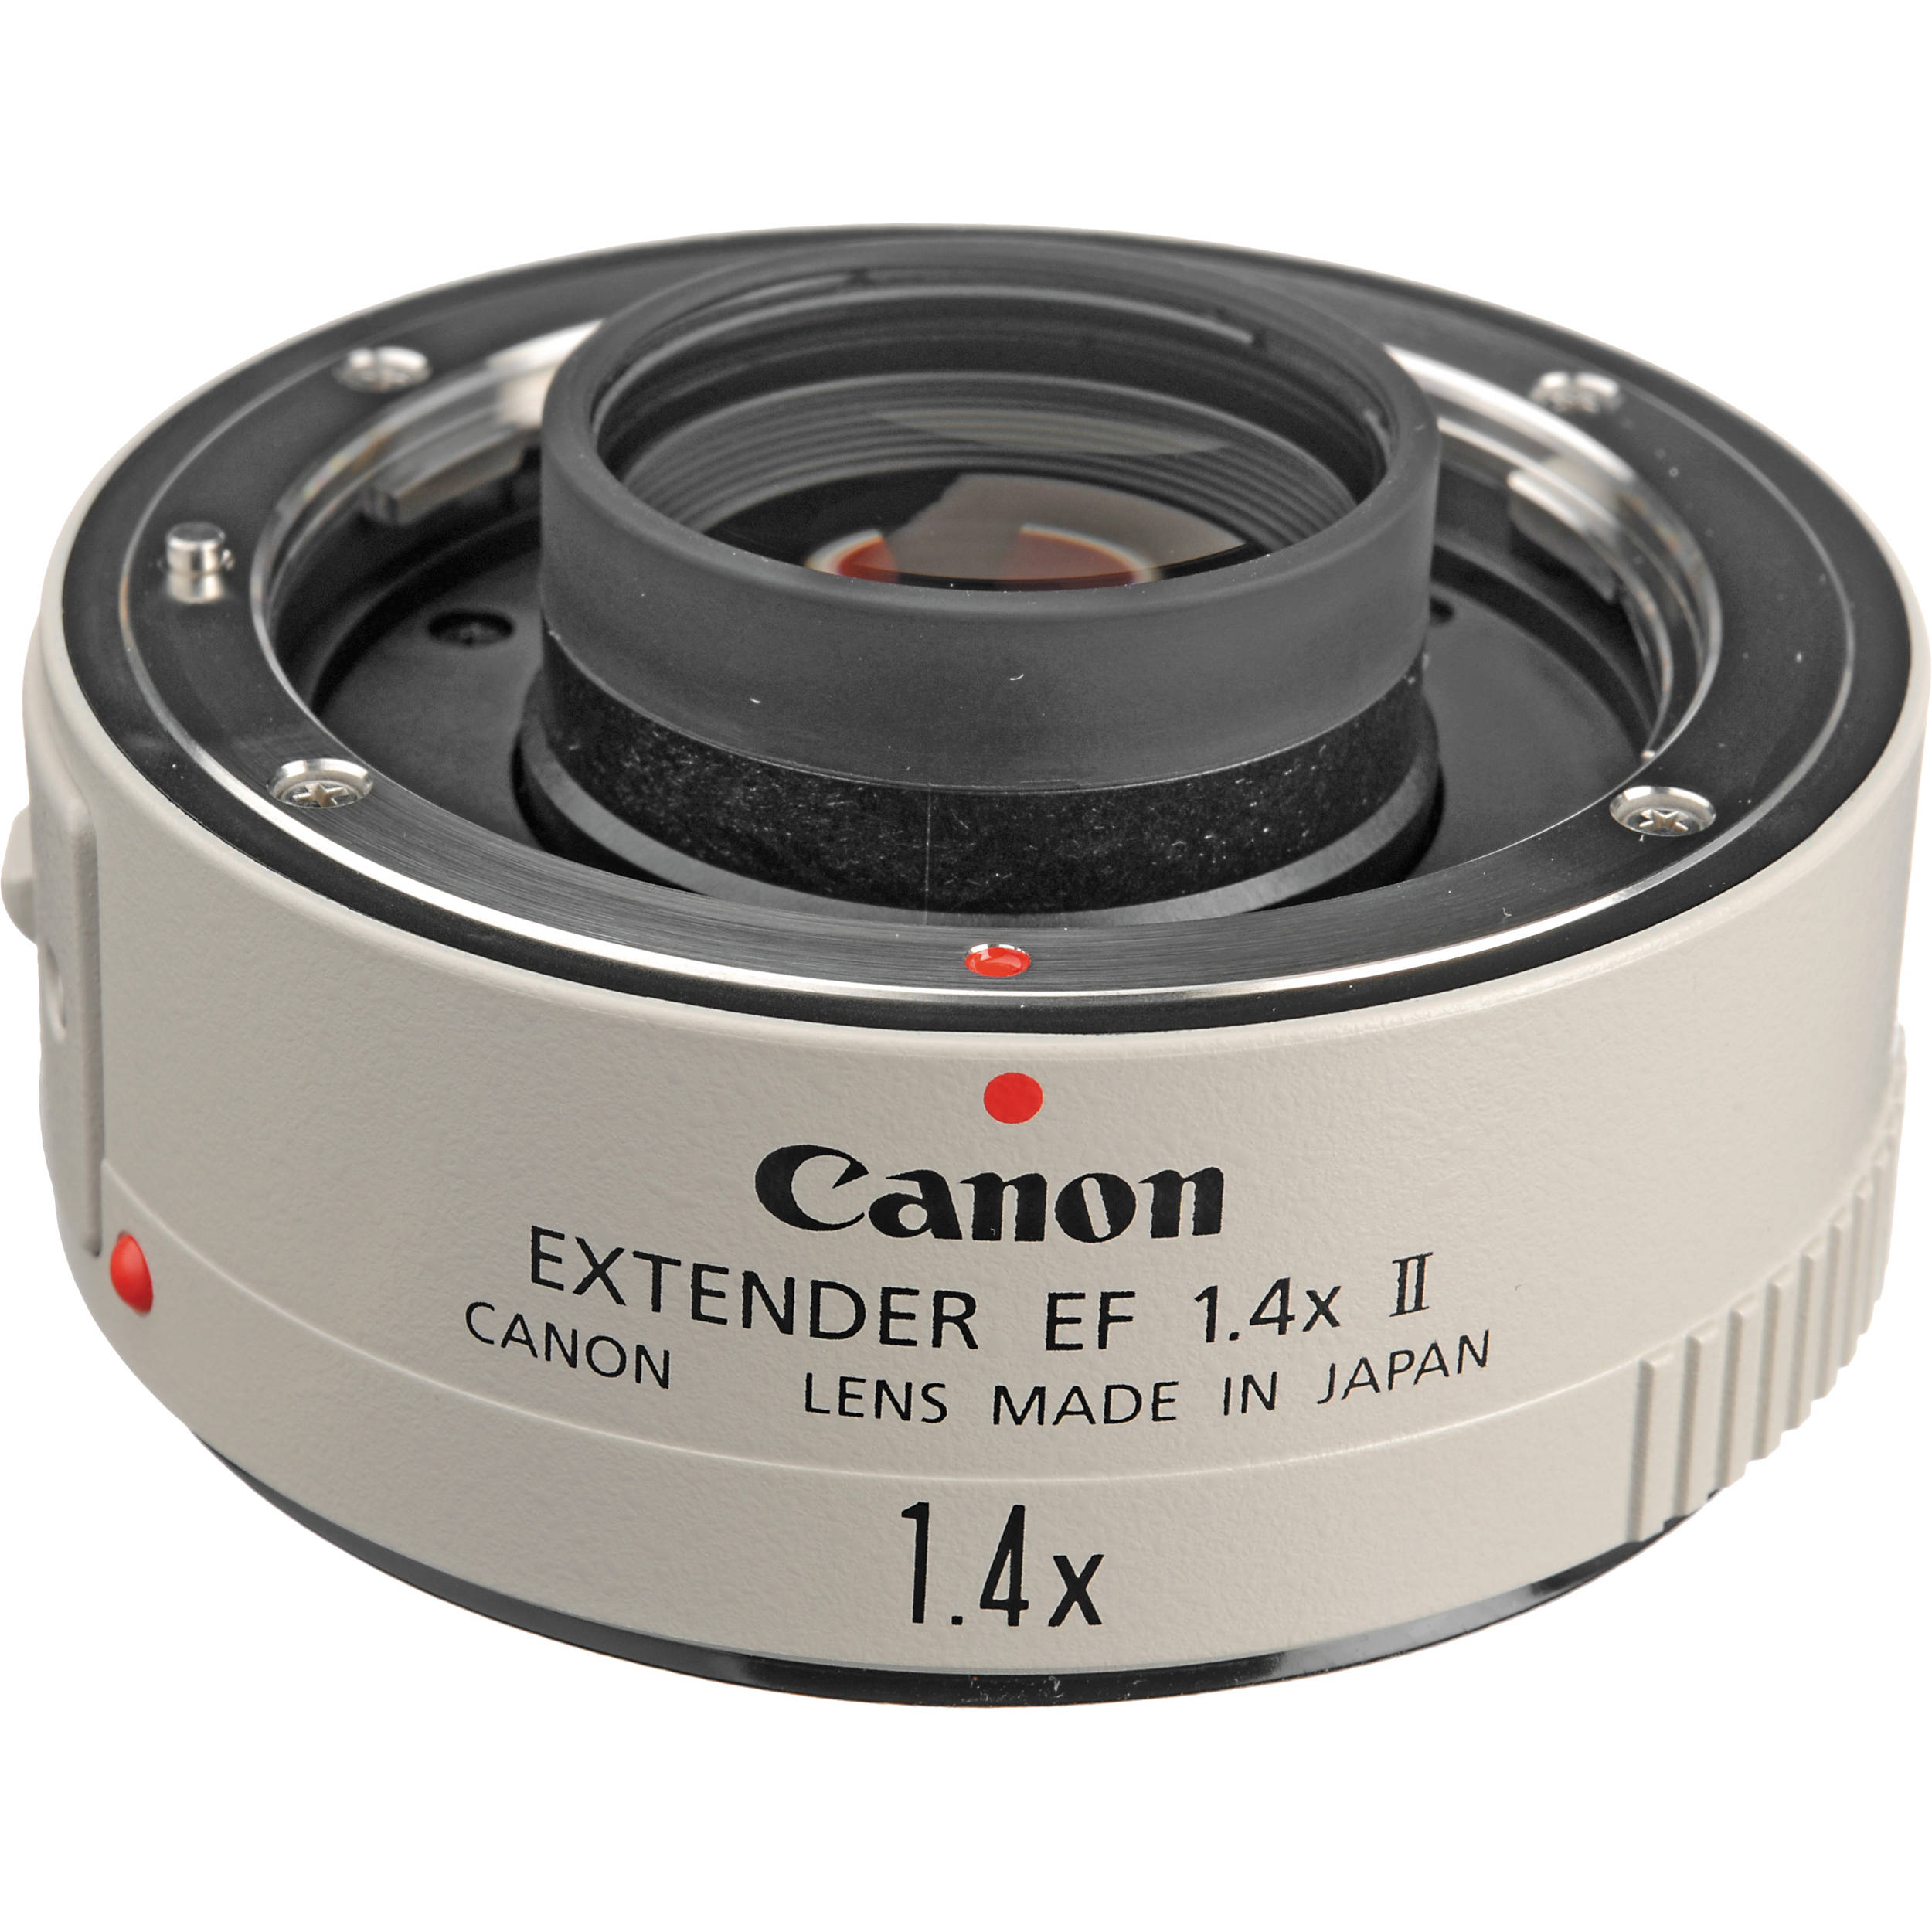 中古 Canon キヤノン Extender Ef 1 4x Ii 中古カメラ フィルムカメラを中心に取り揃えるファイブスターカメラ